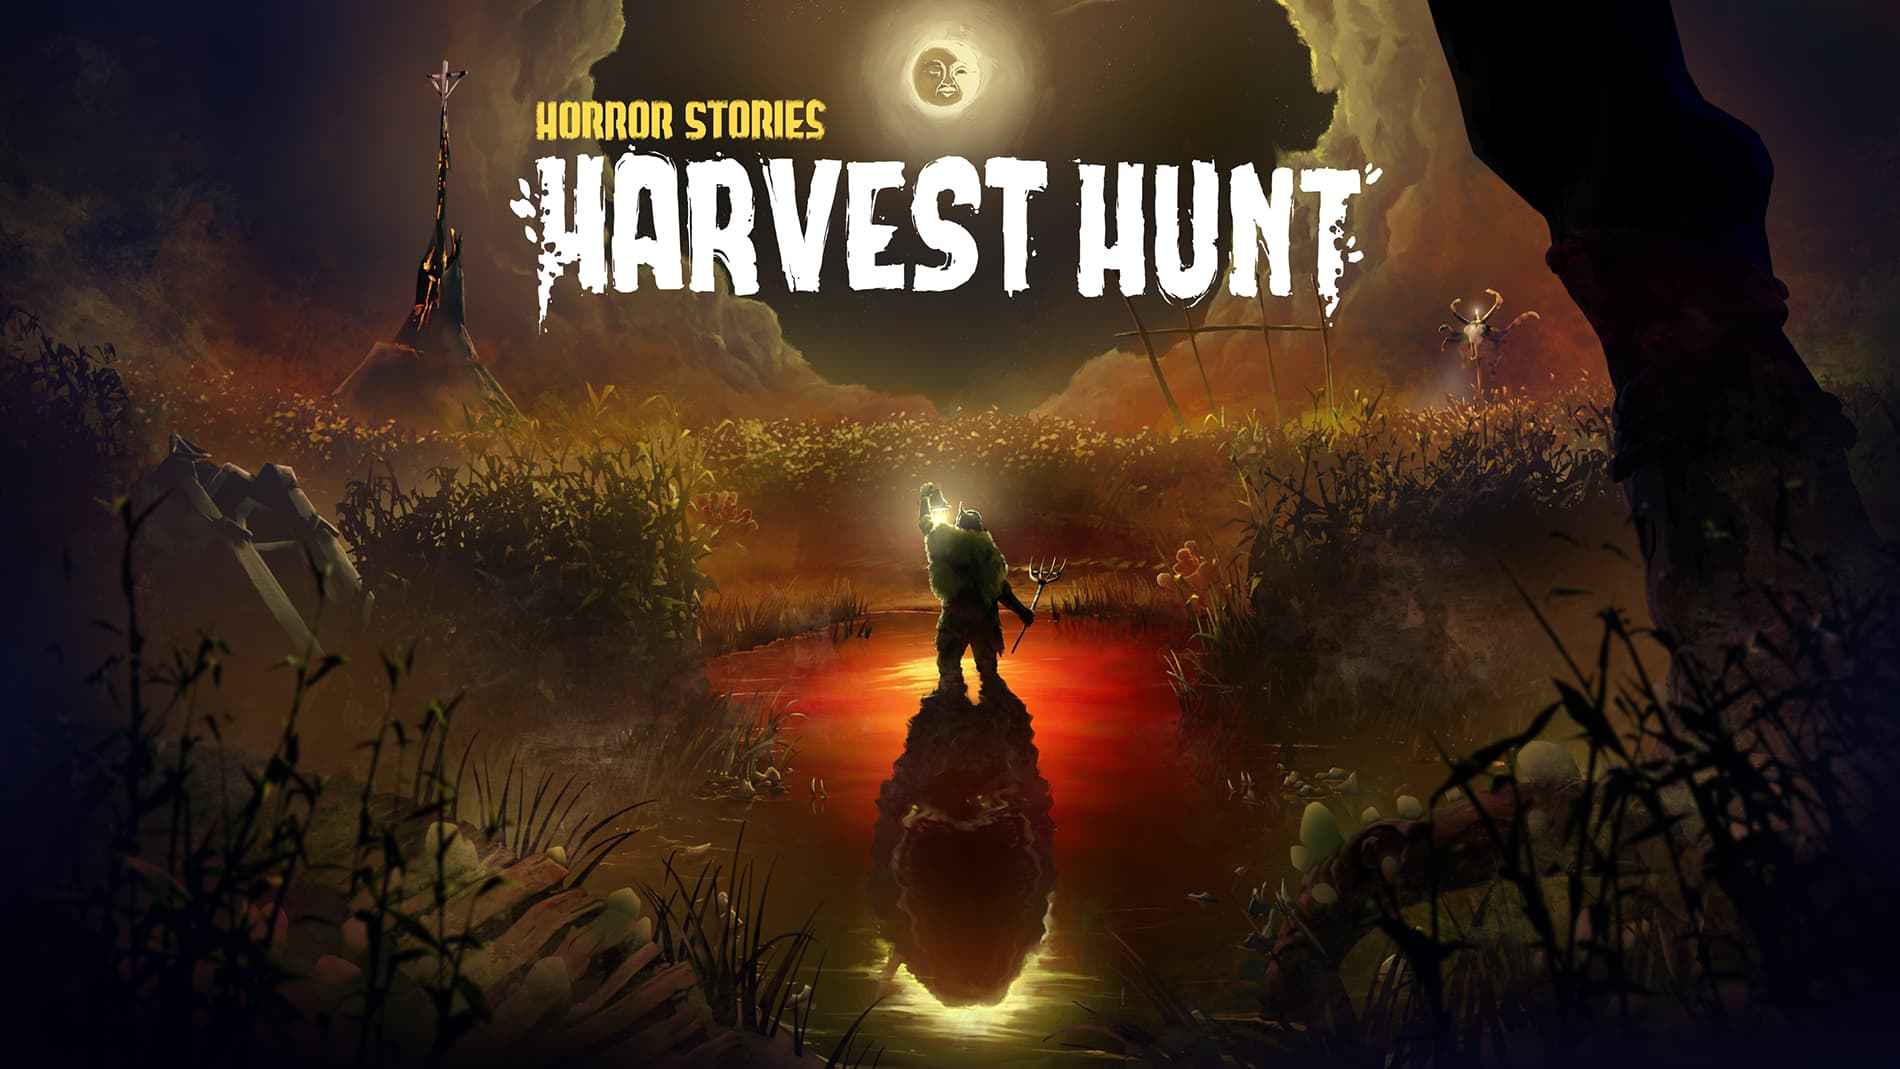 Harvest Hunt